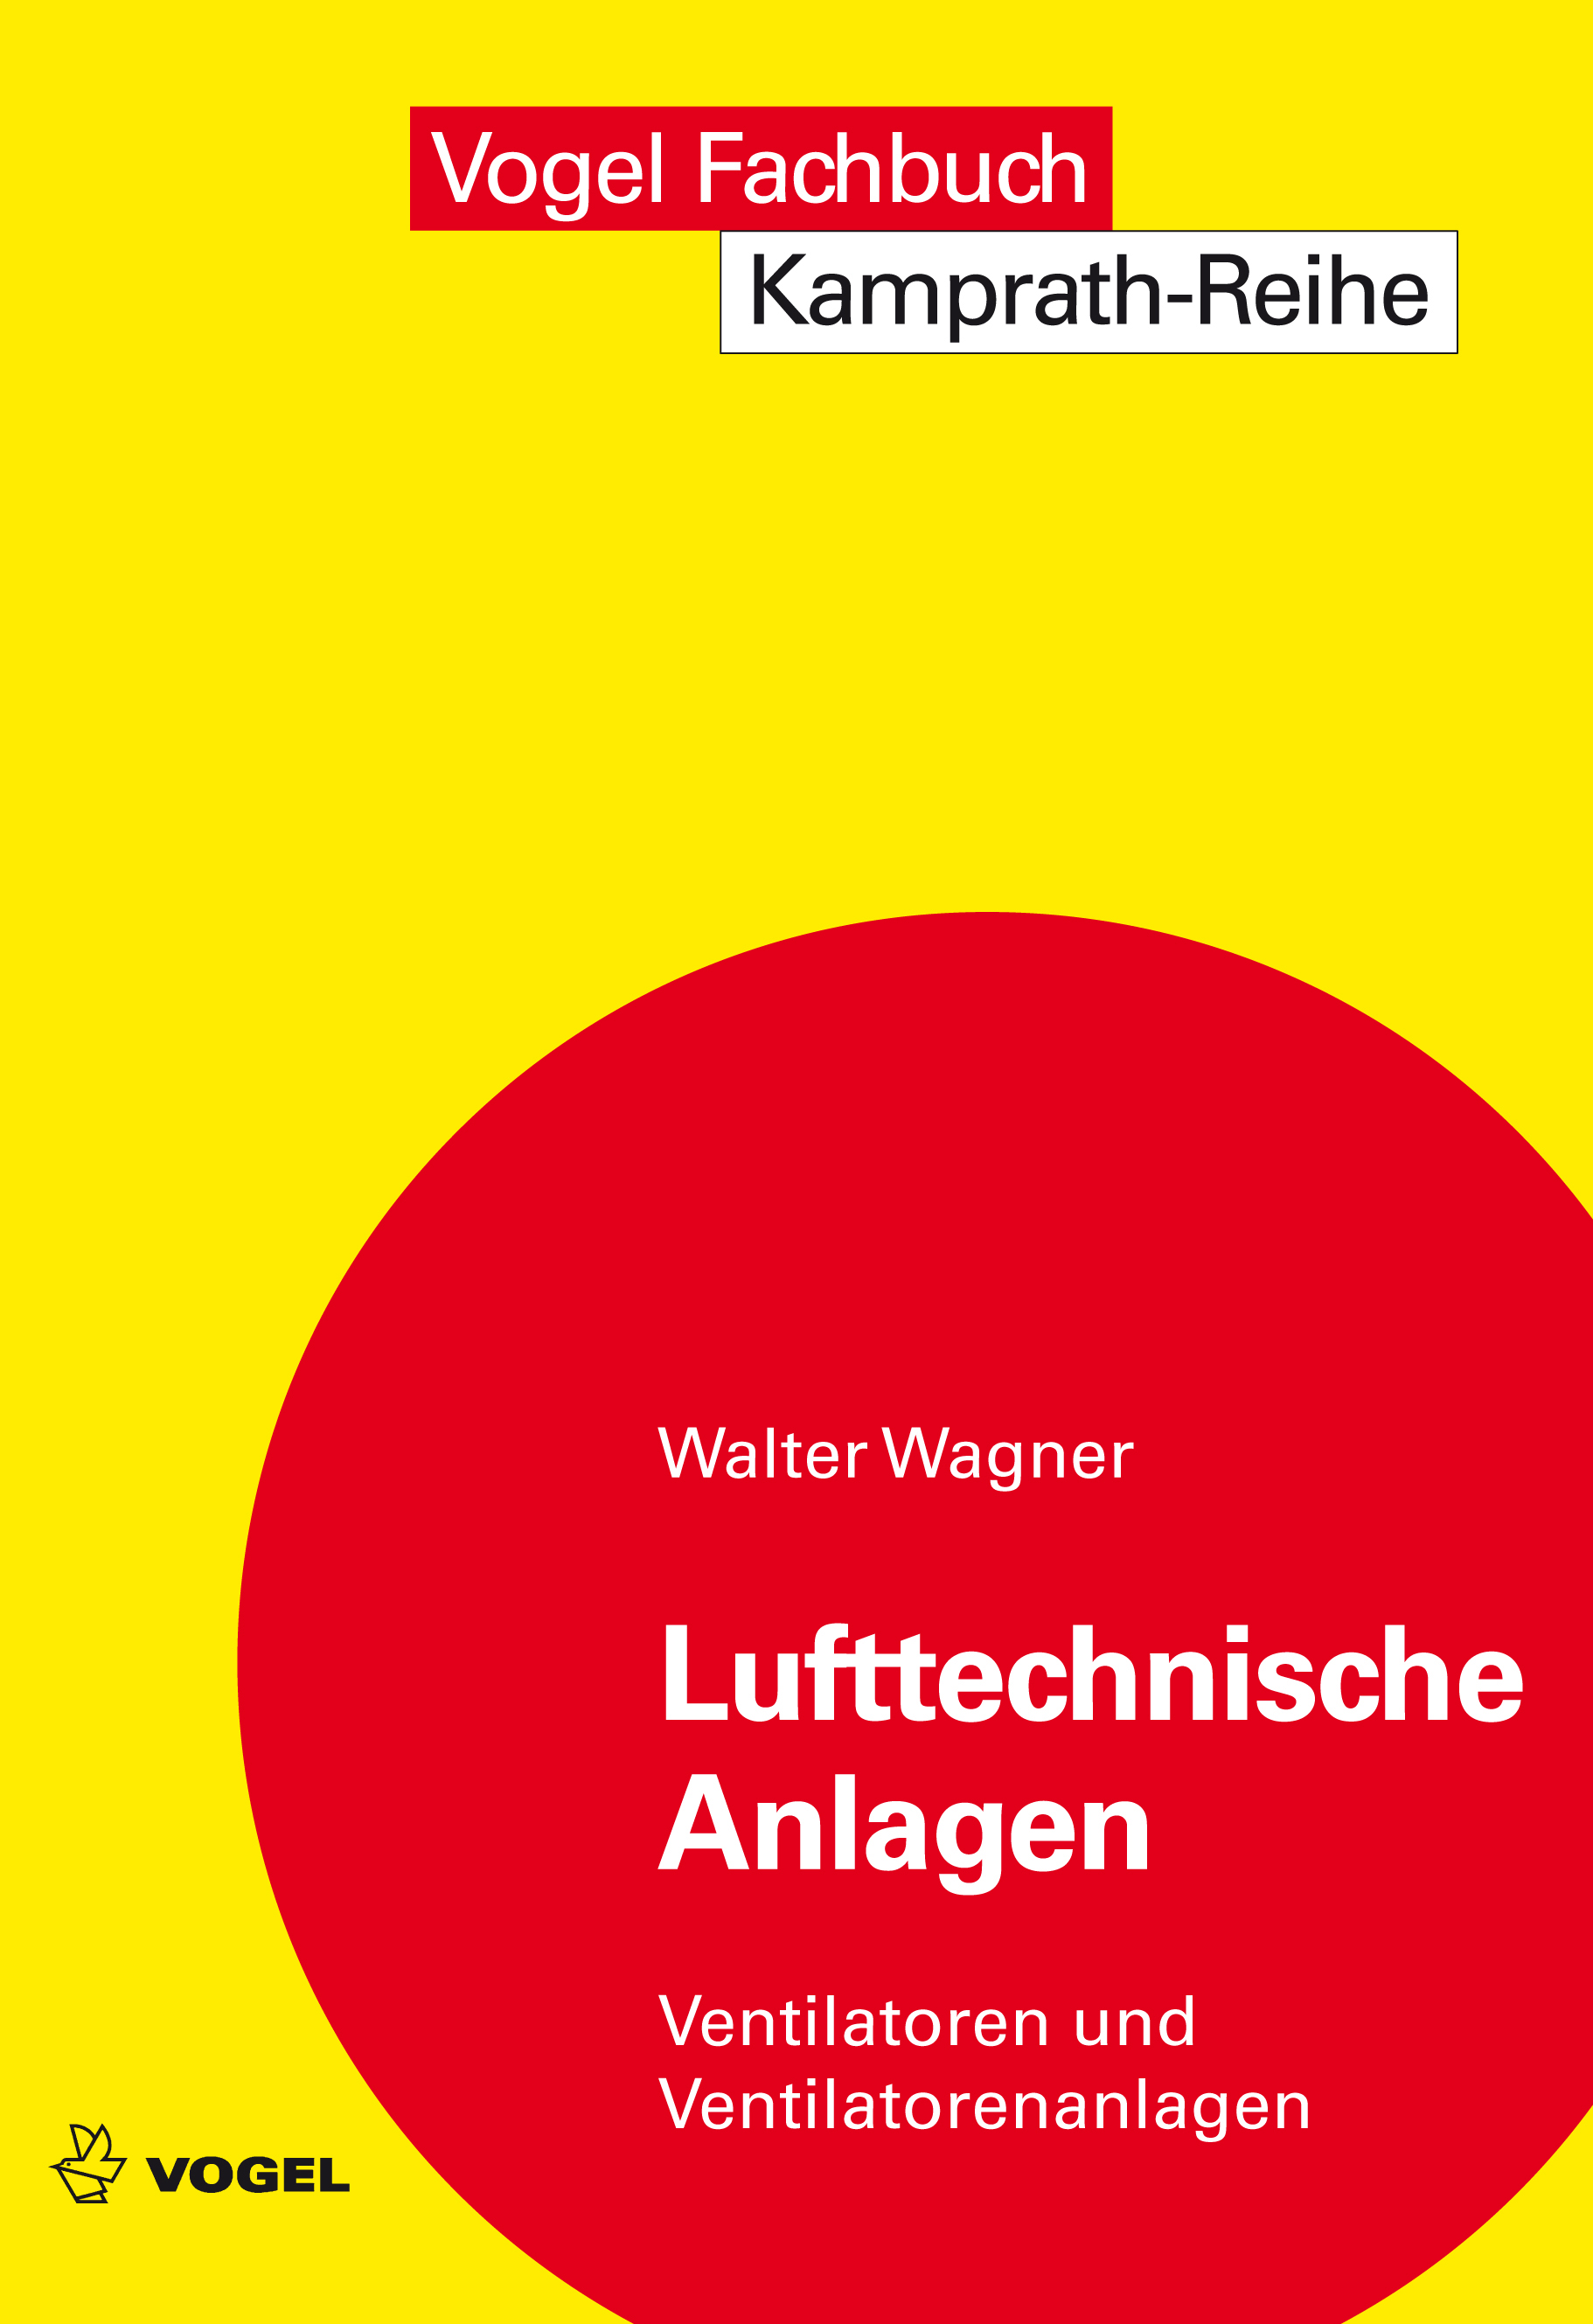 Das Fachbuch "Lufttechnische Anlagen" von Walter Wagner